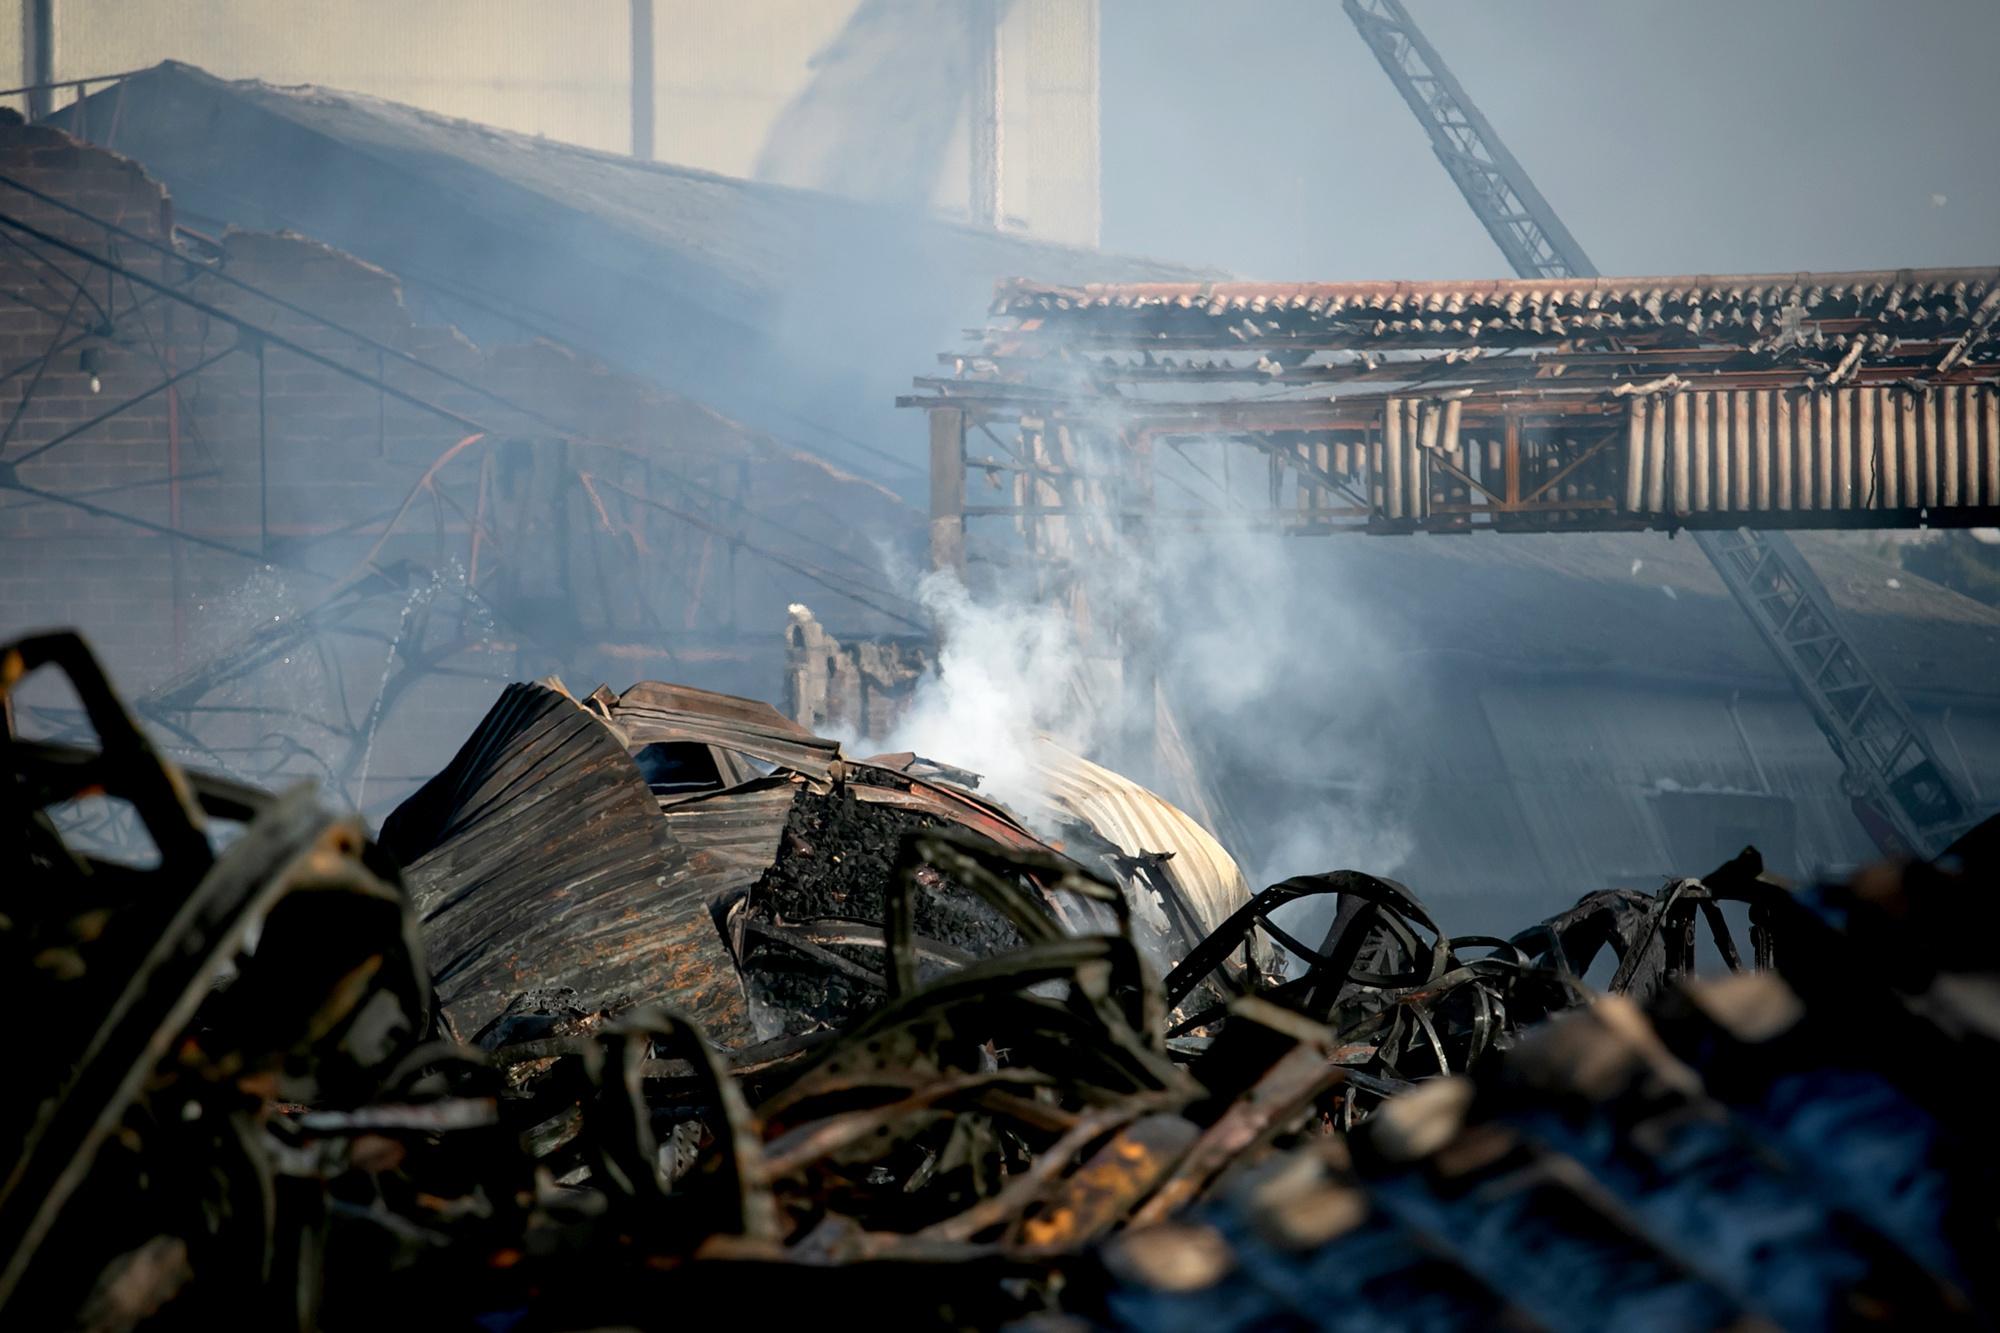 À Rouen, les inquiétudes demeurent alors que l'incendie de l'usine chimique est éteint